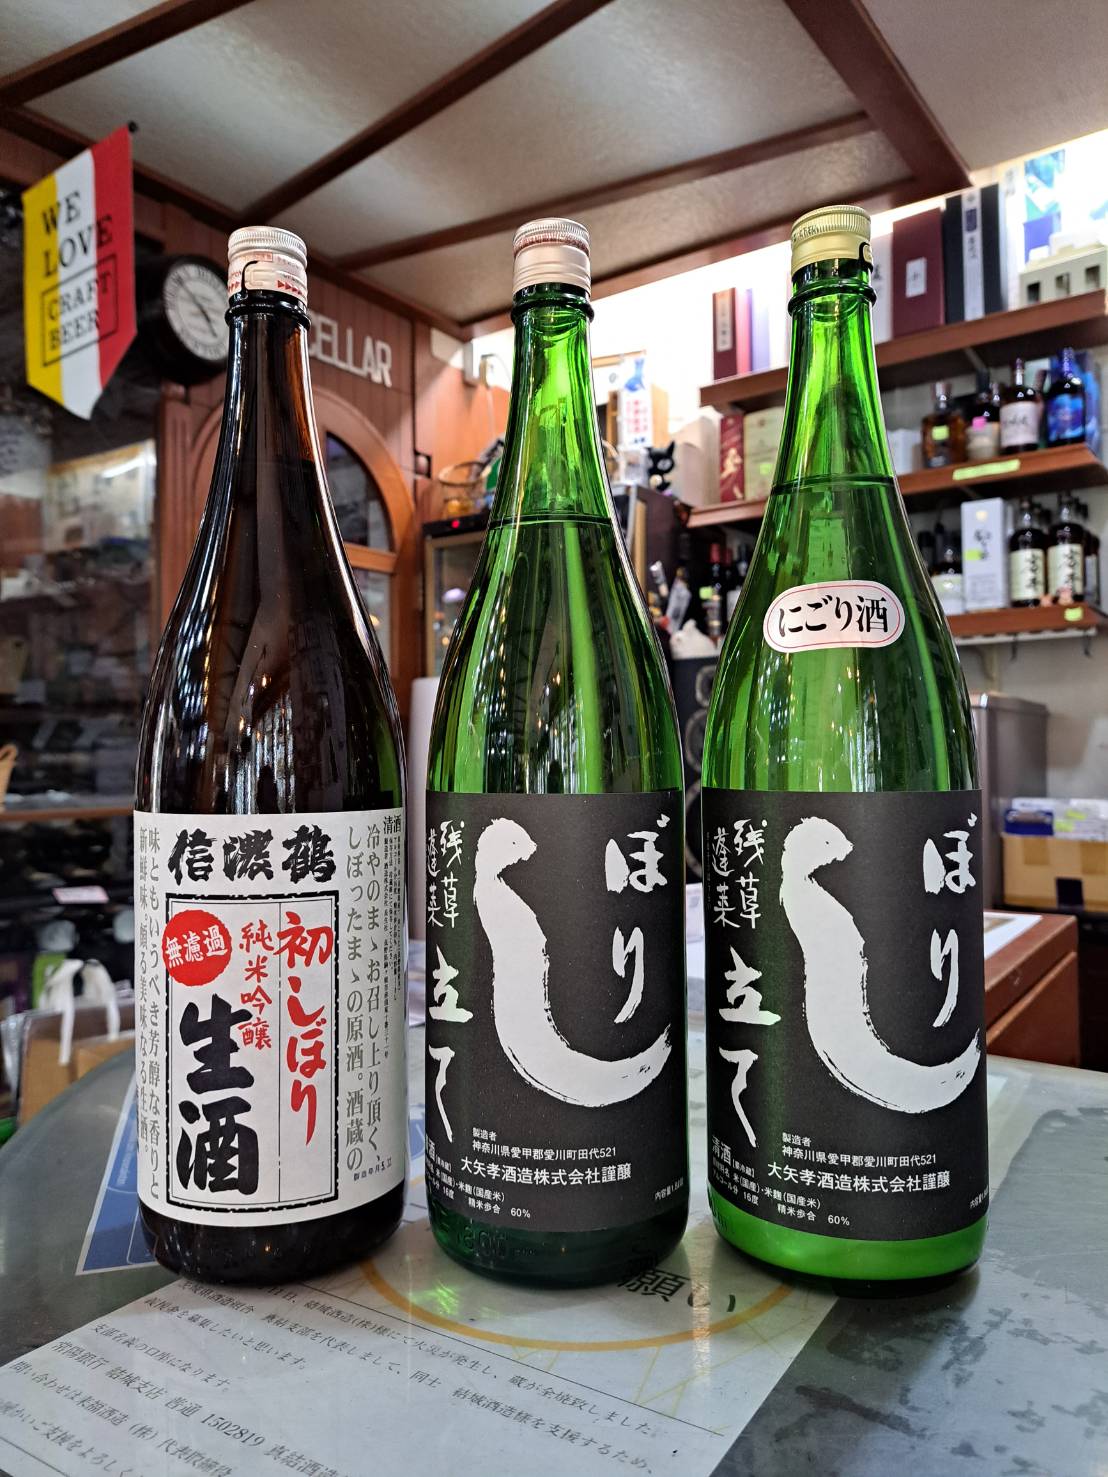 長野県の信濃鶴さんと神奈川県の残草蓬莱さんから搾りたて新酒が入荷してきました』